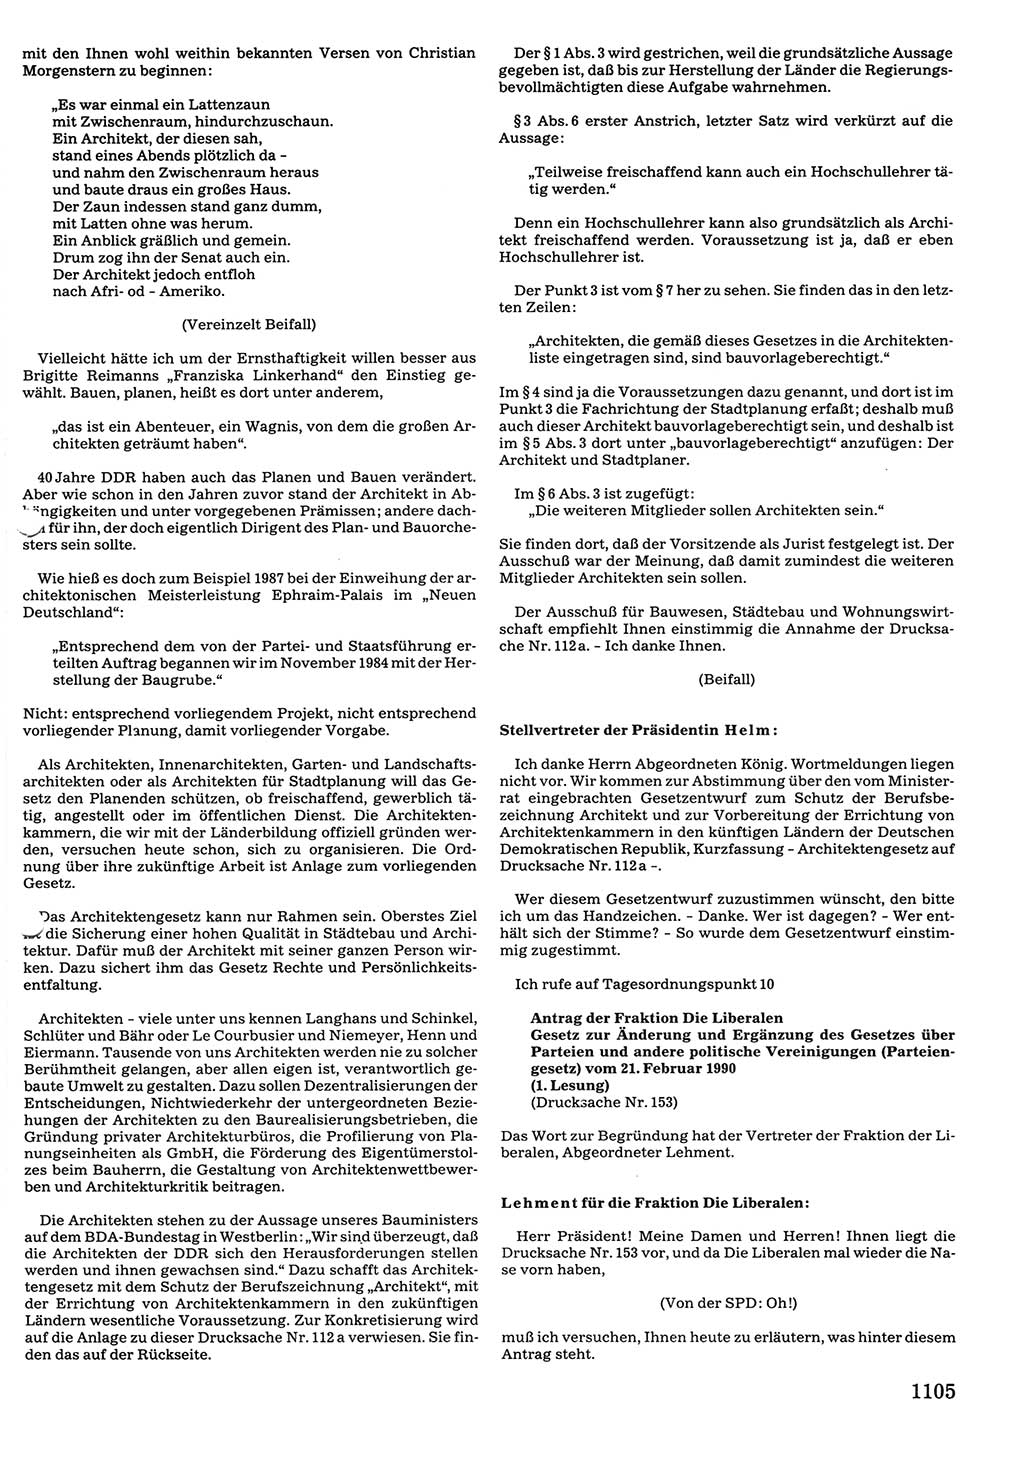 Tagungen der Volkskammer (VK) der Deutschen Demokratischen Republik (DDR), 10. Wahlperiode 1990, Seite 1105 (VK. DDR 10. WP. 1990, Prot. Tg. 1-38, 5.4.-2.10.1990, S. 1105)